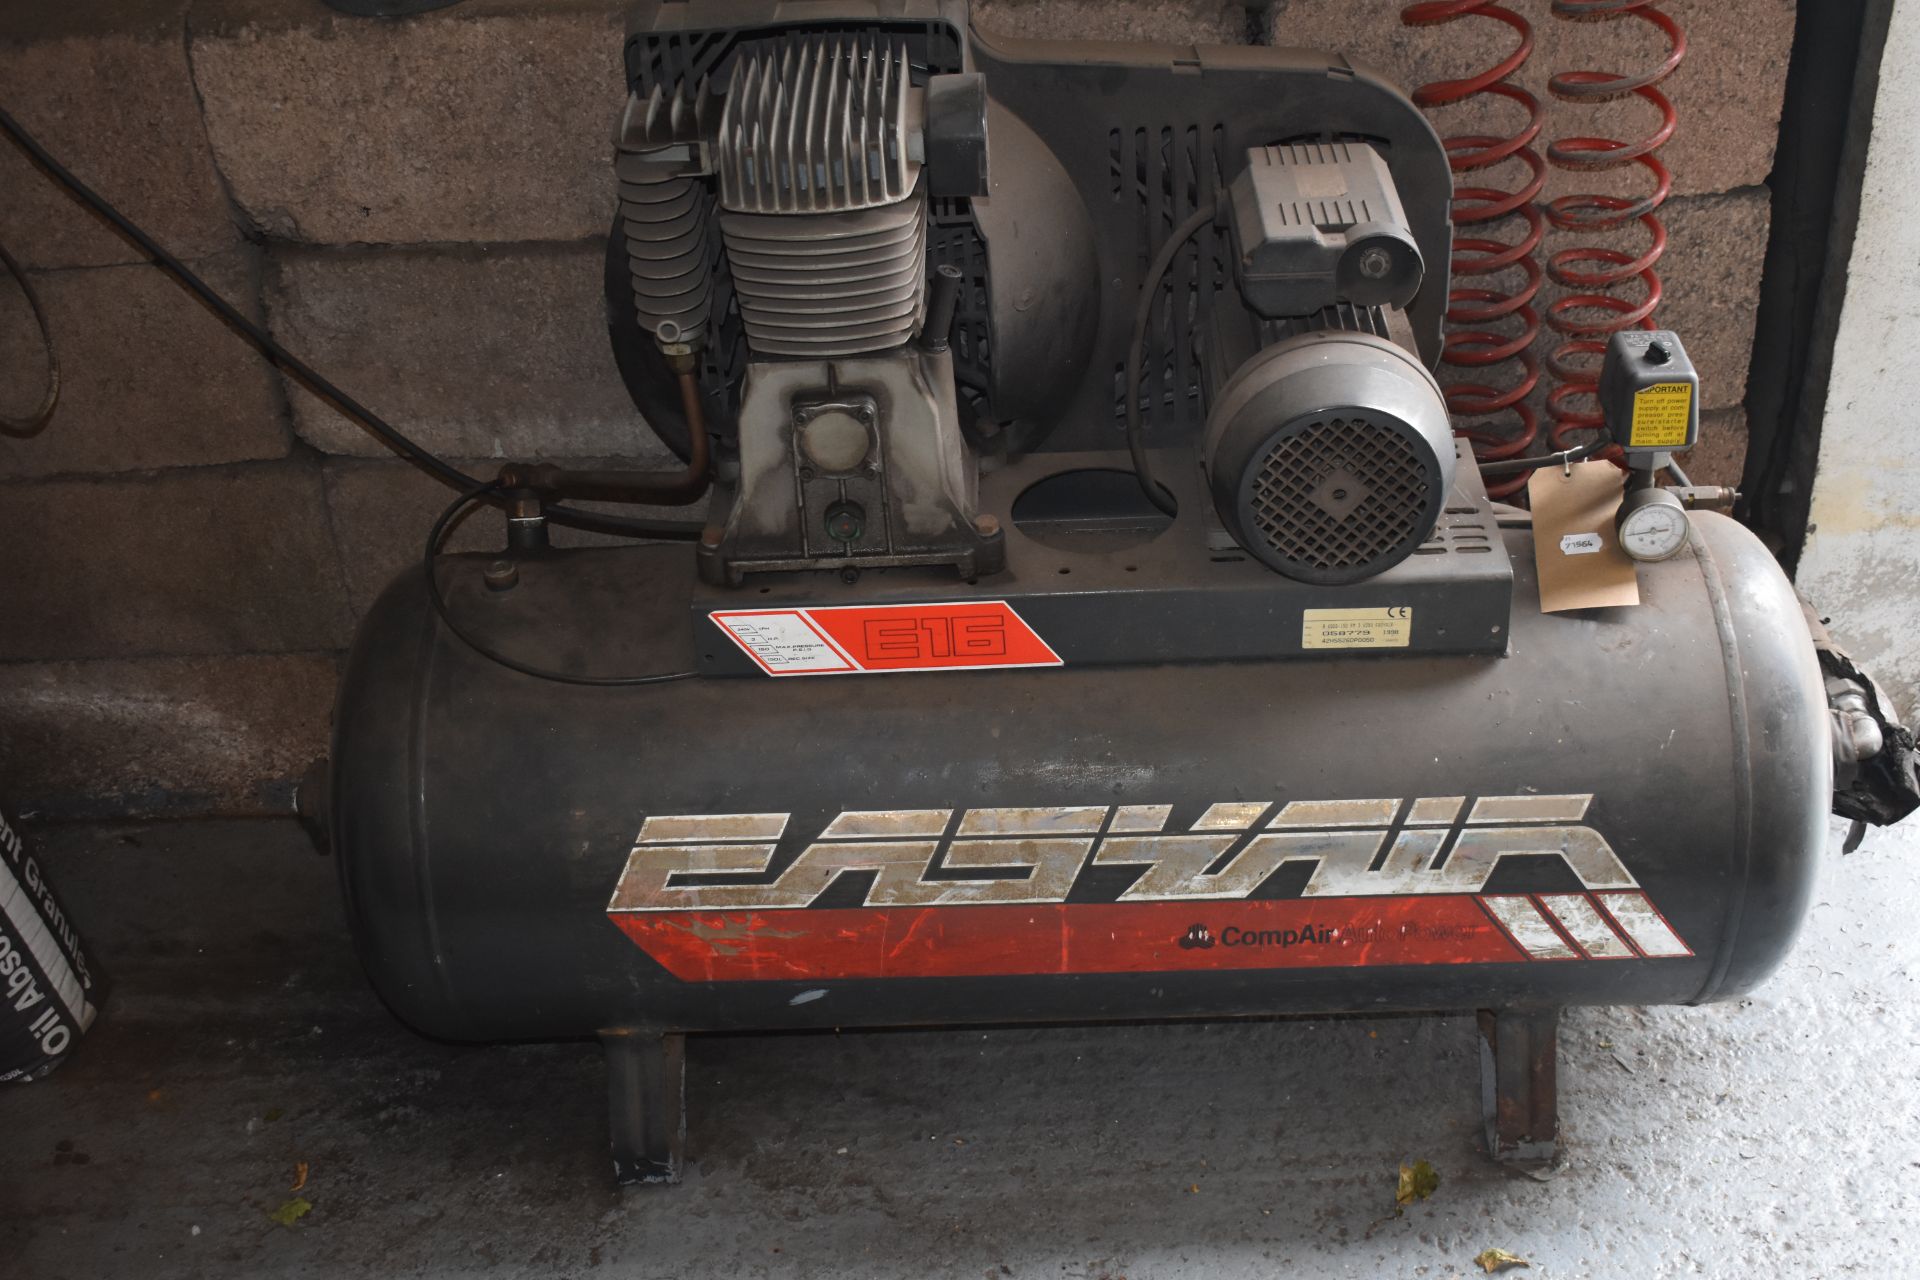 An EASYAIR E16 Compair compressor - Image 2 of 2